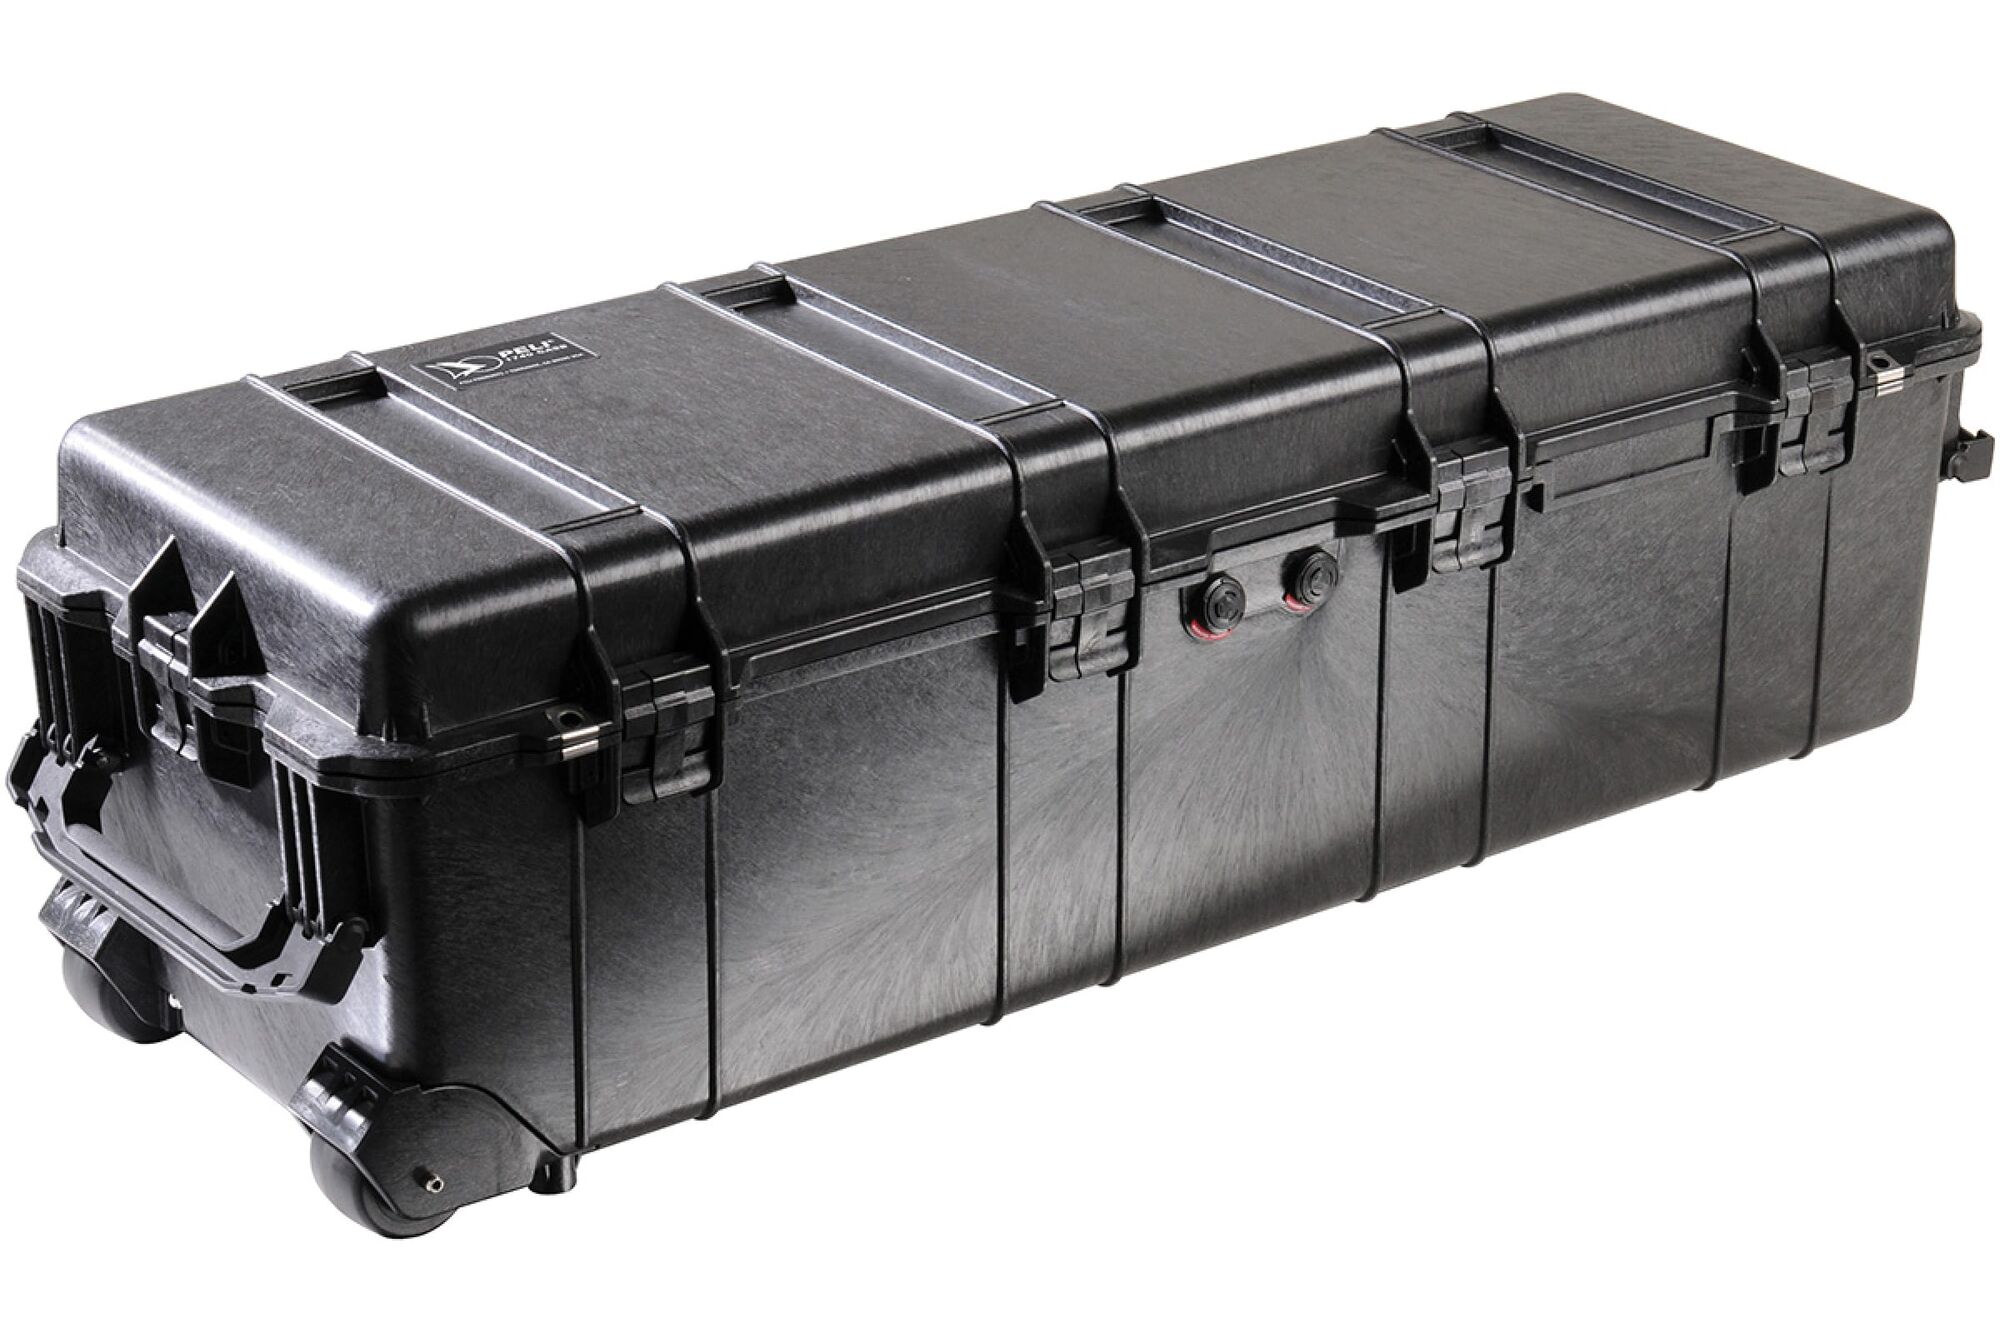 Металлические шкафы и ящики используемые для перевозки оружия воздушным транспортом не менее